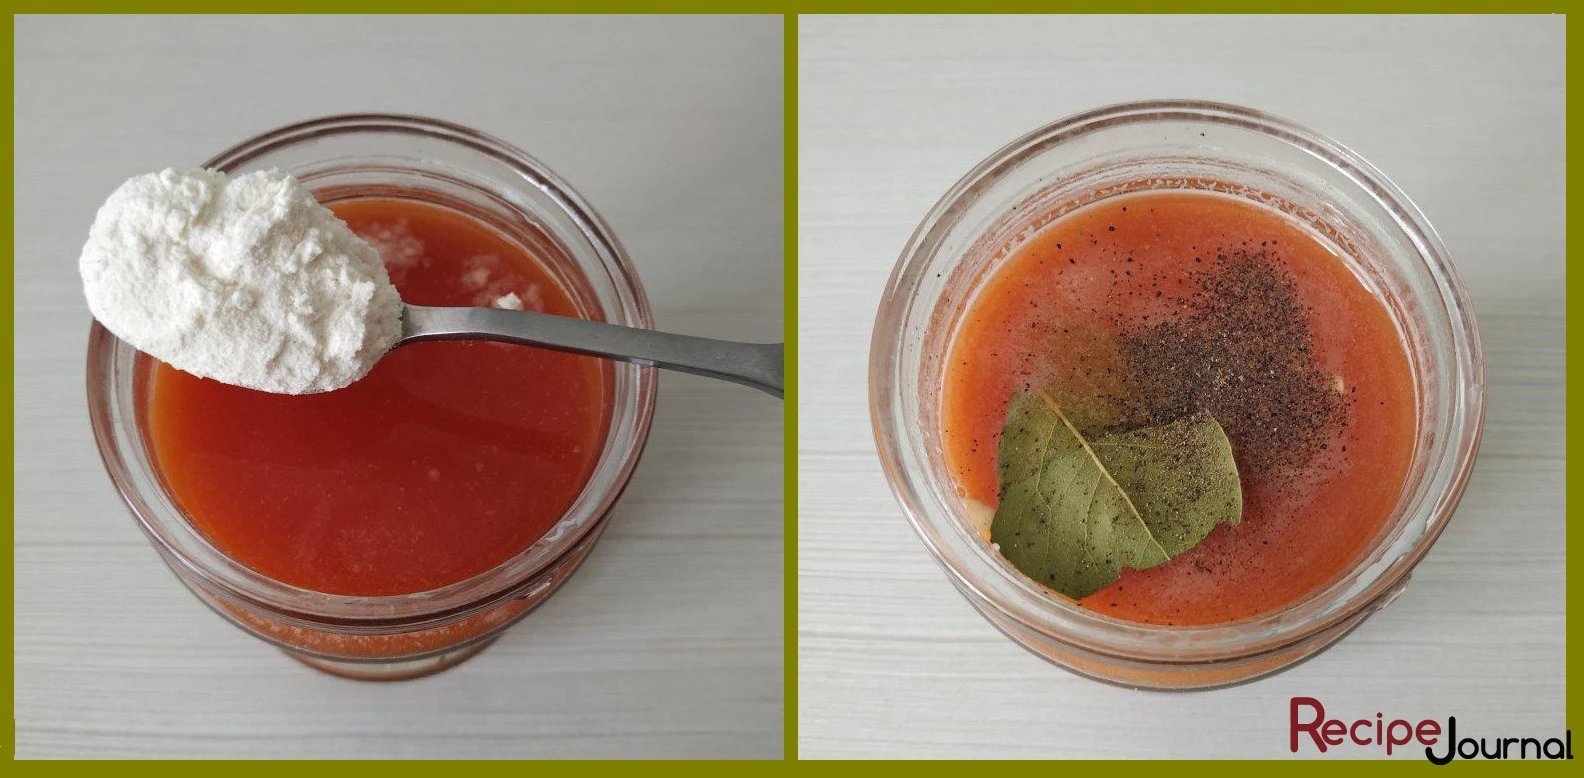 К томатной пасте добавляем муку и хорошо перетираем, затем наливаем воду и хорошо перемешиваем, чтобы не было комочков. Солим, перчим по вкусу, добавляем лавровый лист.